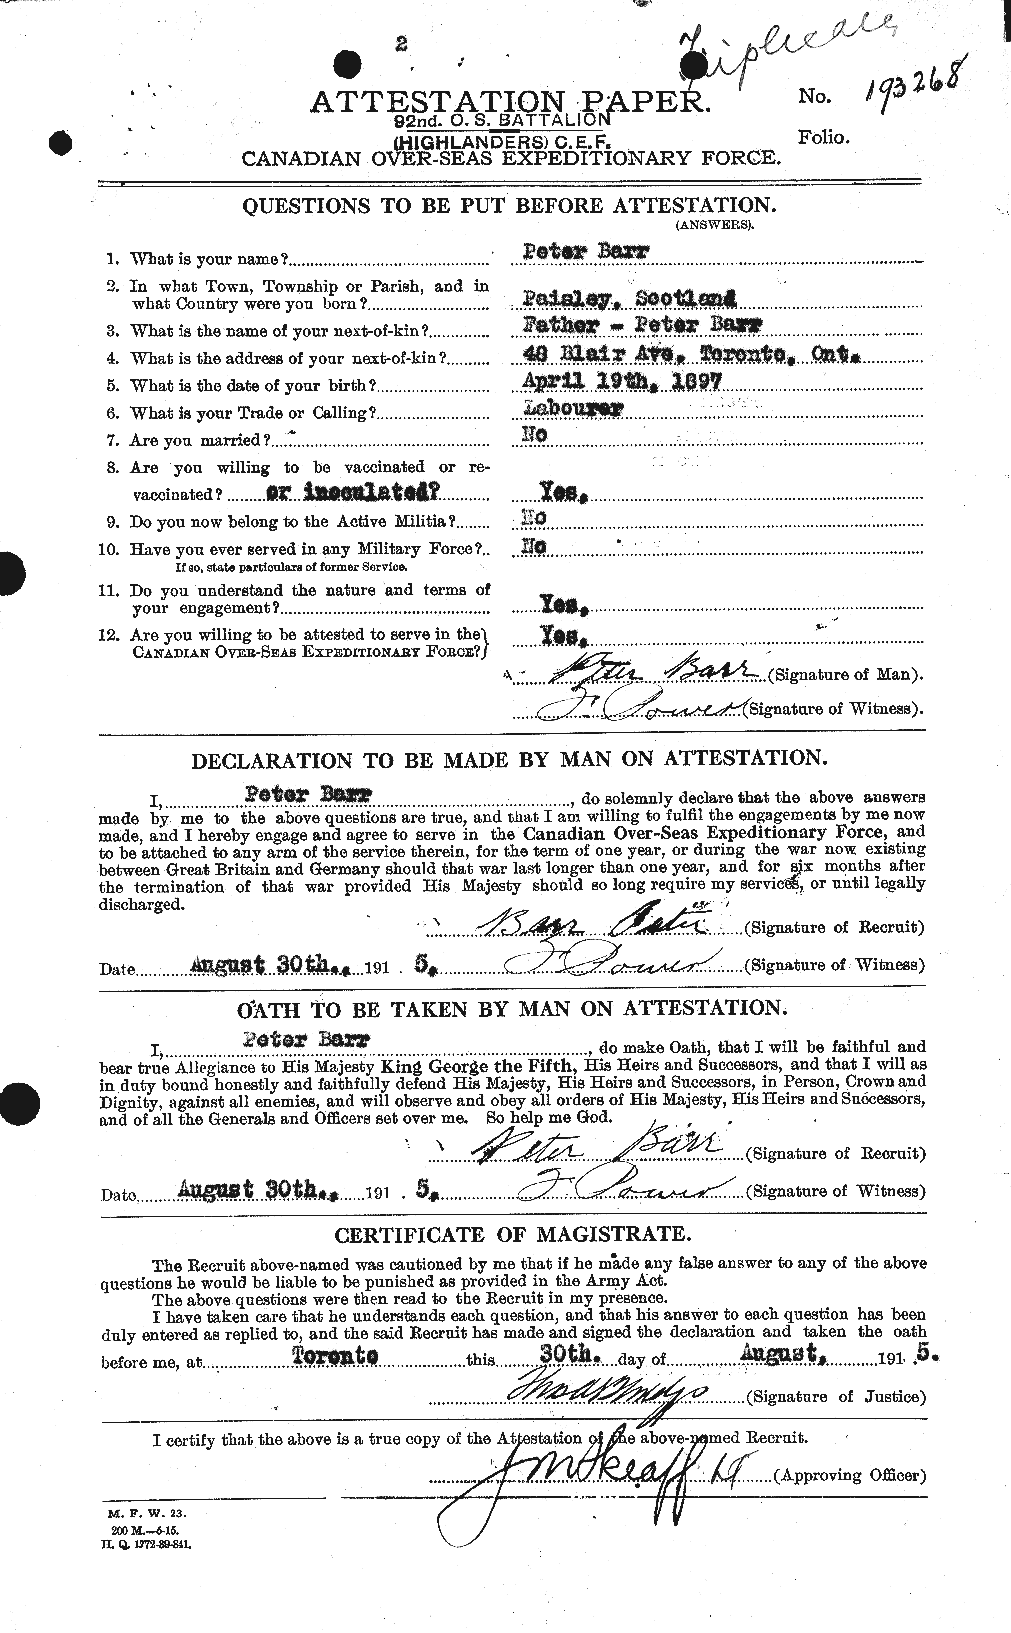 Dossiers du Personnel de la Première Guerre mondiale - CEC 227892a